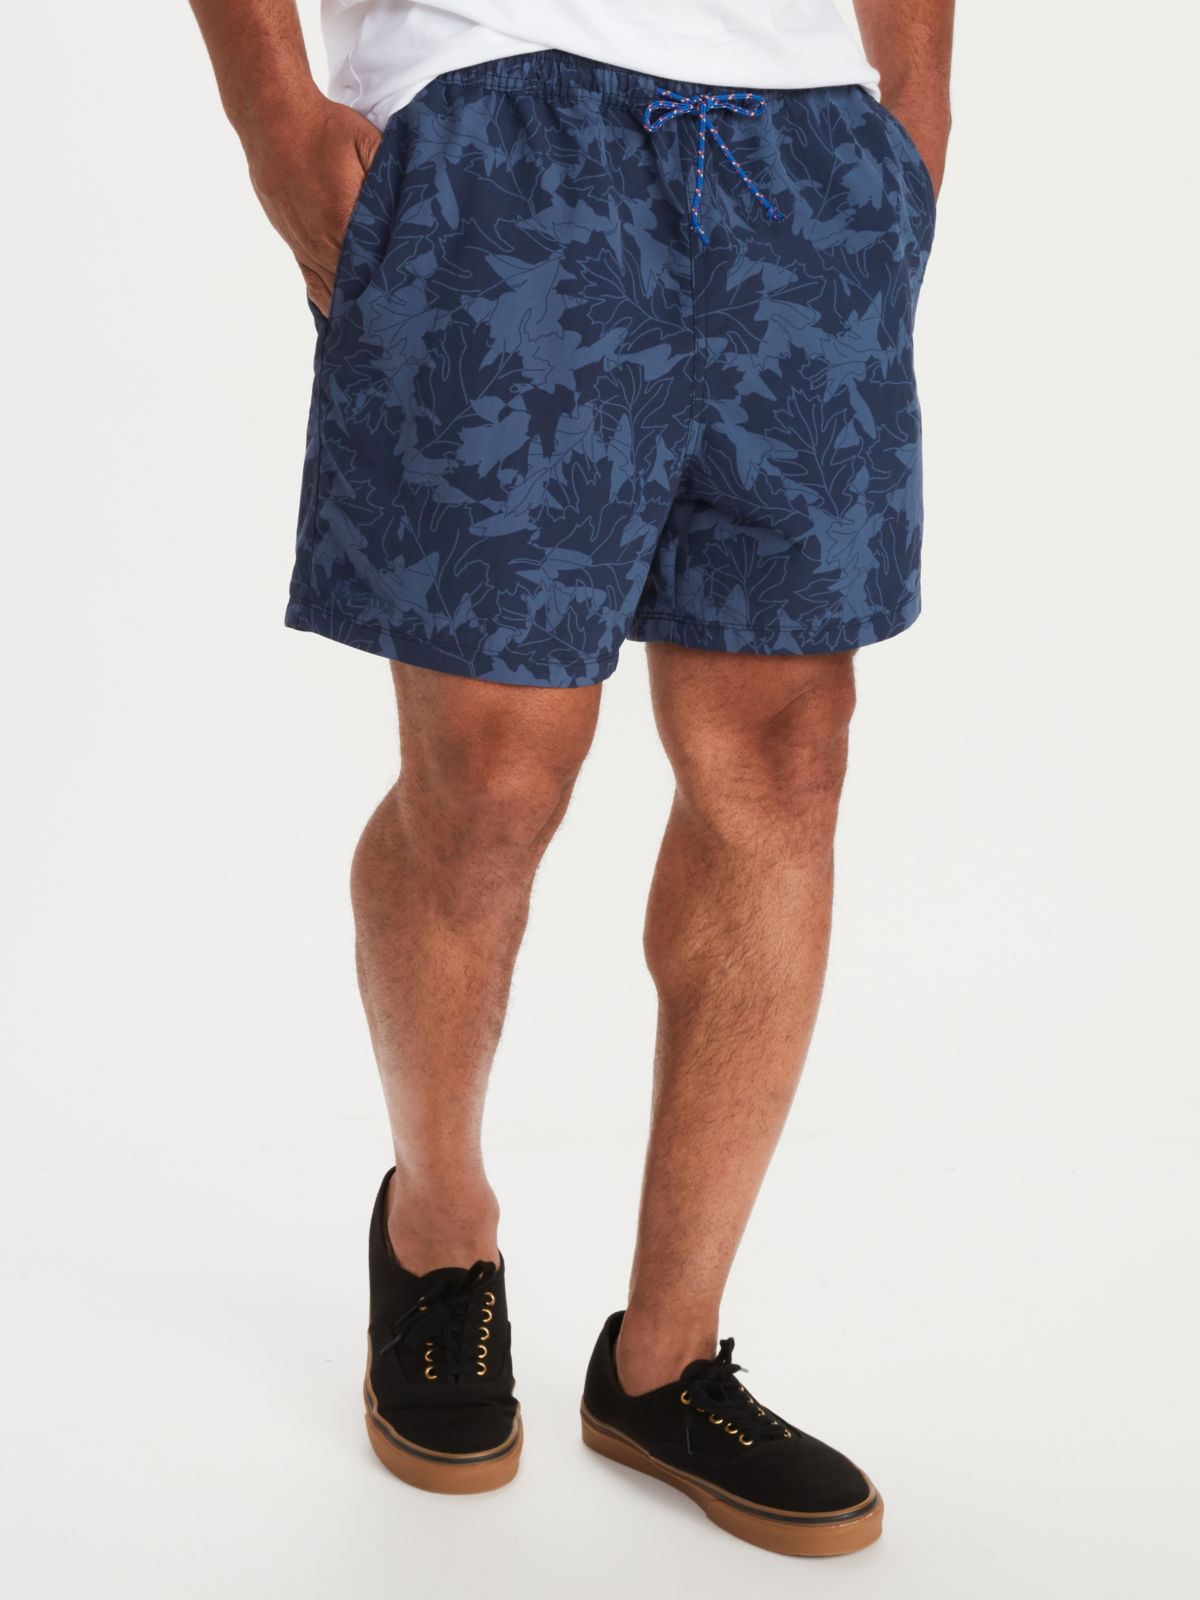 Man in shorts